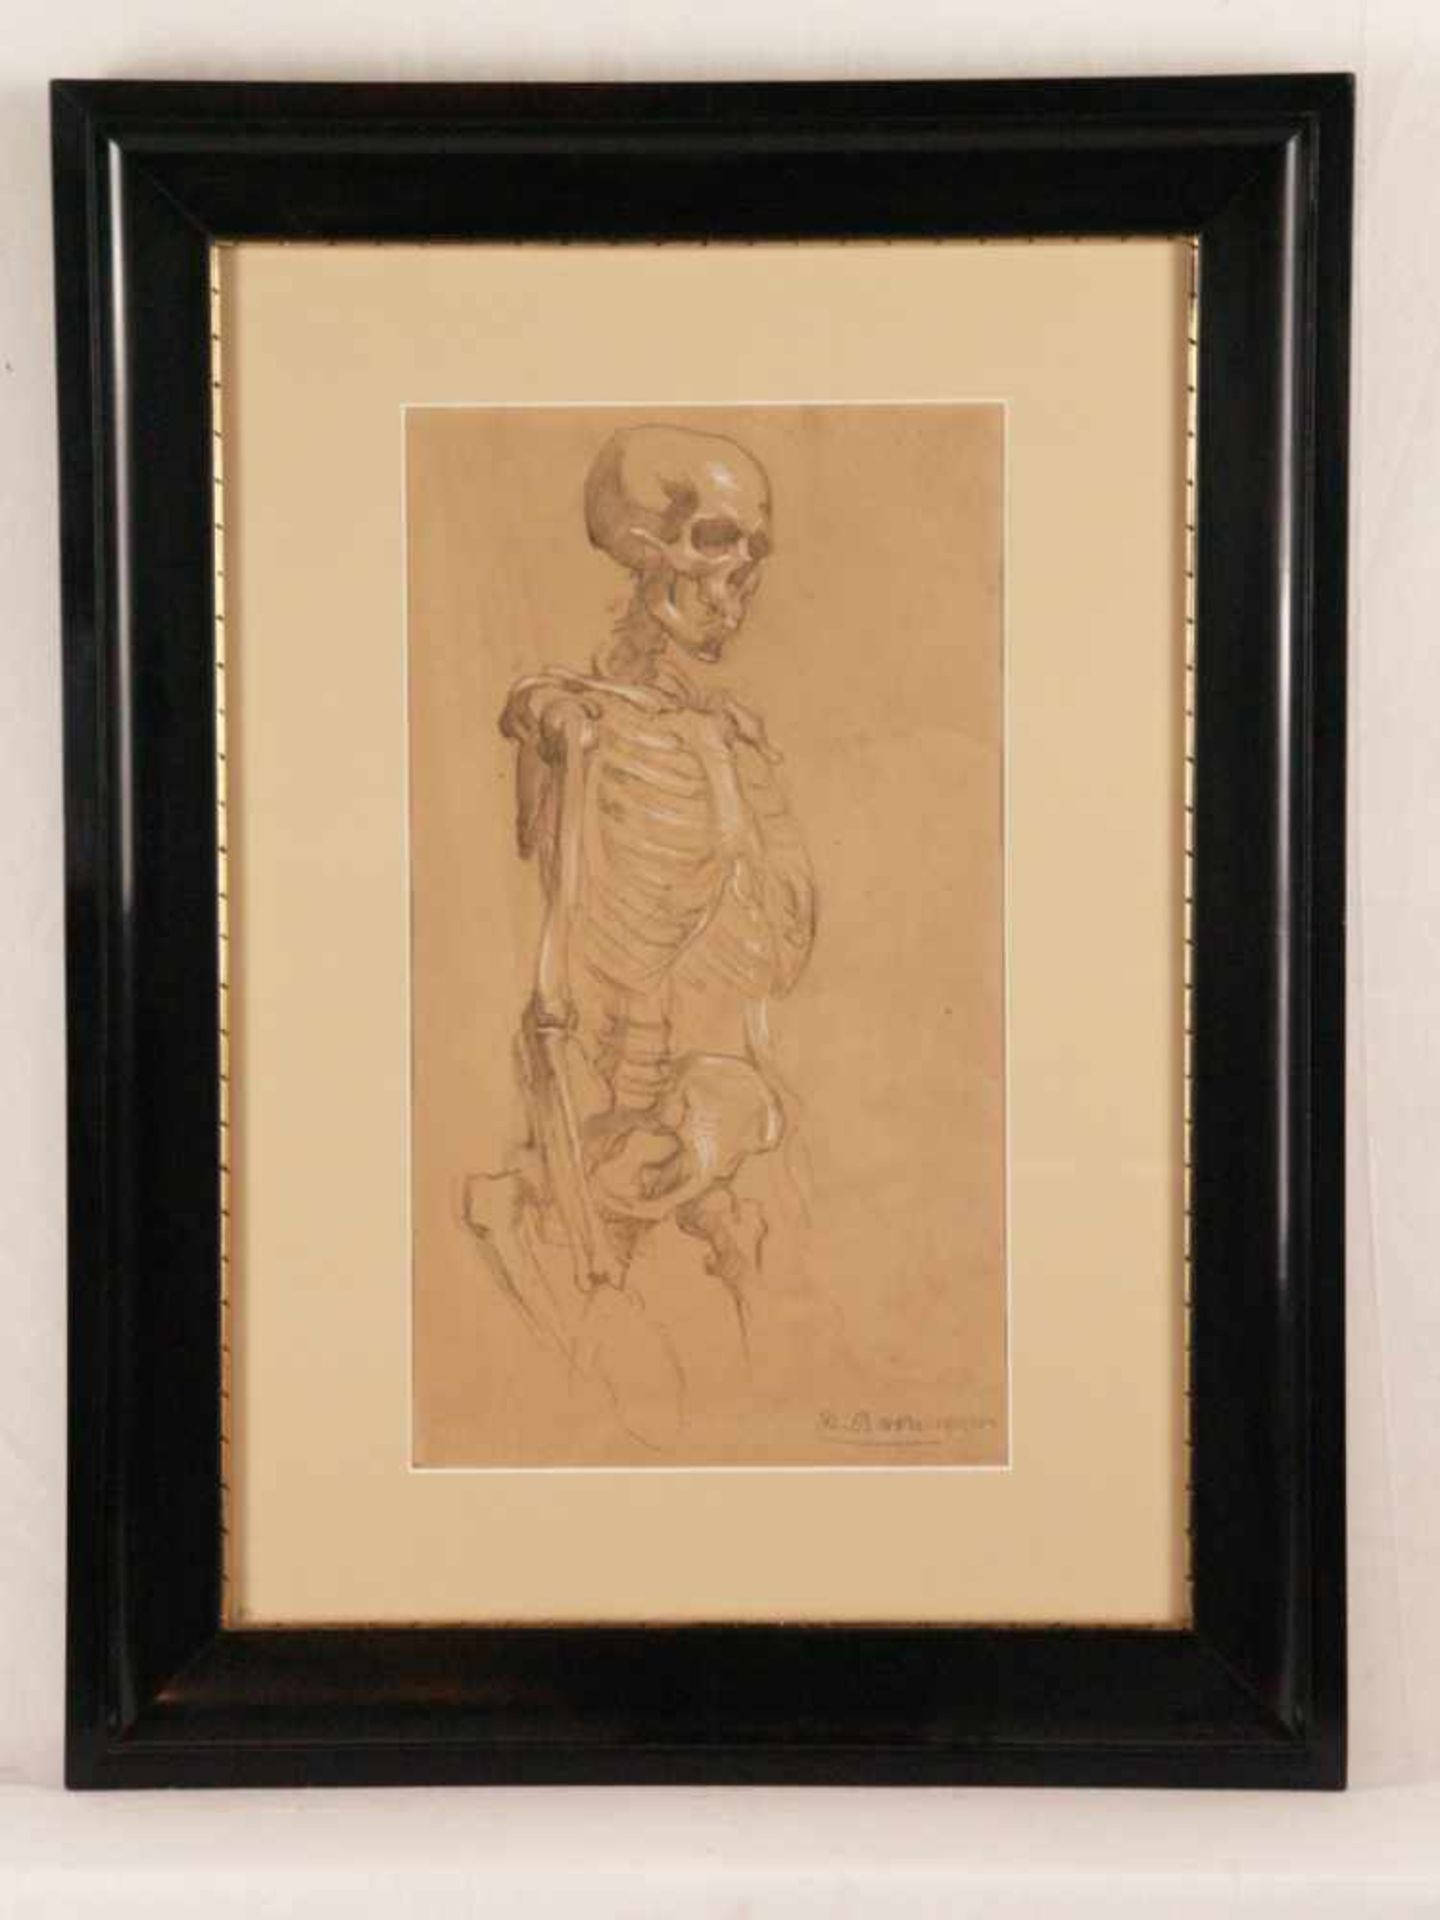 Bach, Andreas (1886 Nürnberg - 1963 ebd.) - "Memento Mori - Skelettstudie", 1906/07, schwarze